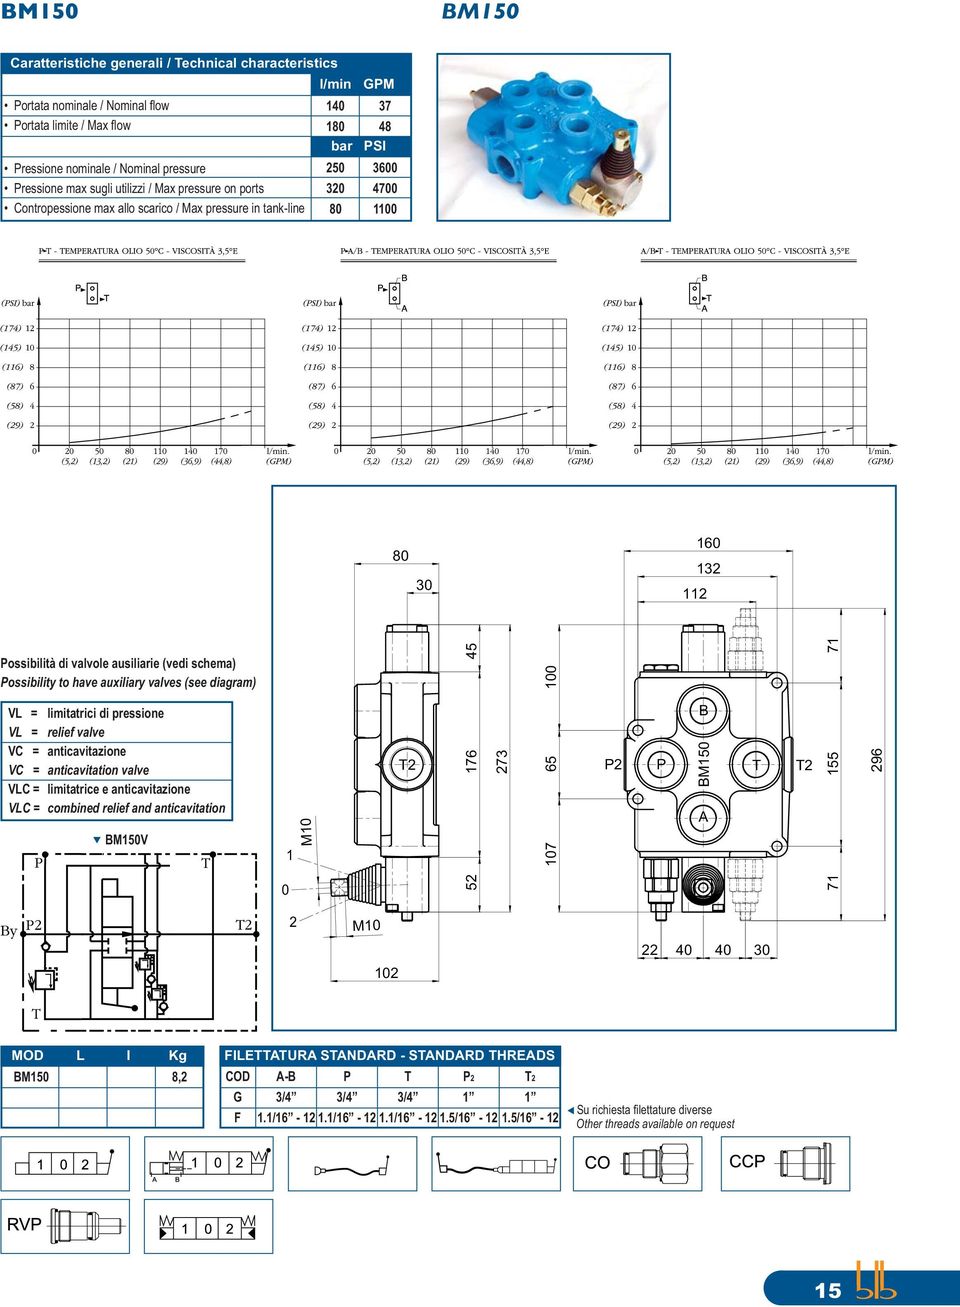 valves (see diagram) V = V = VC = VC = VC = VC = limitatrici di pressione relief valve anticavitazione anticavitation valve limitatrice e anticavitazione combined relief and anticavitation M5V M